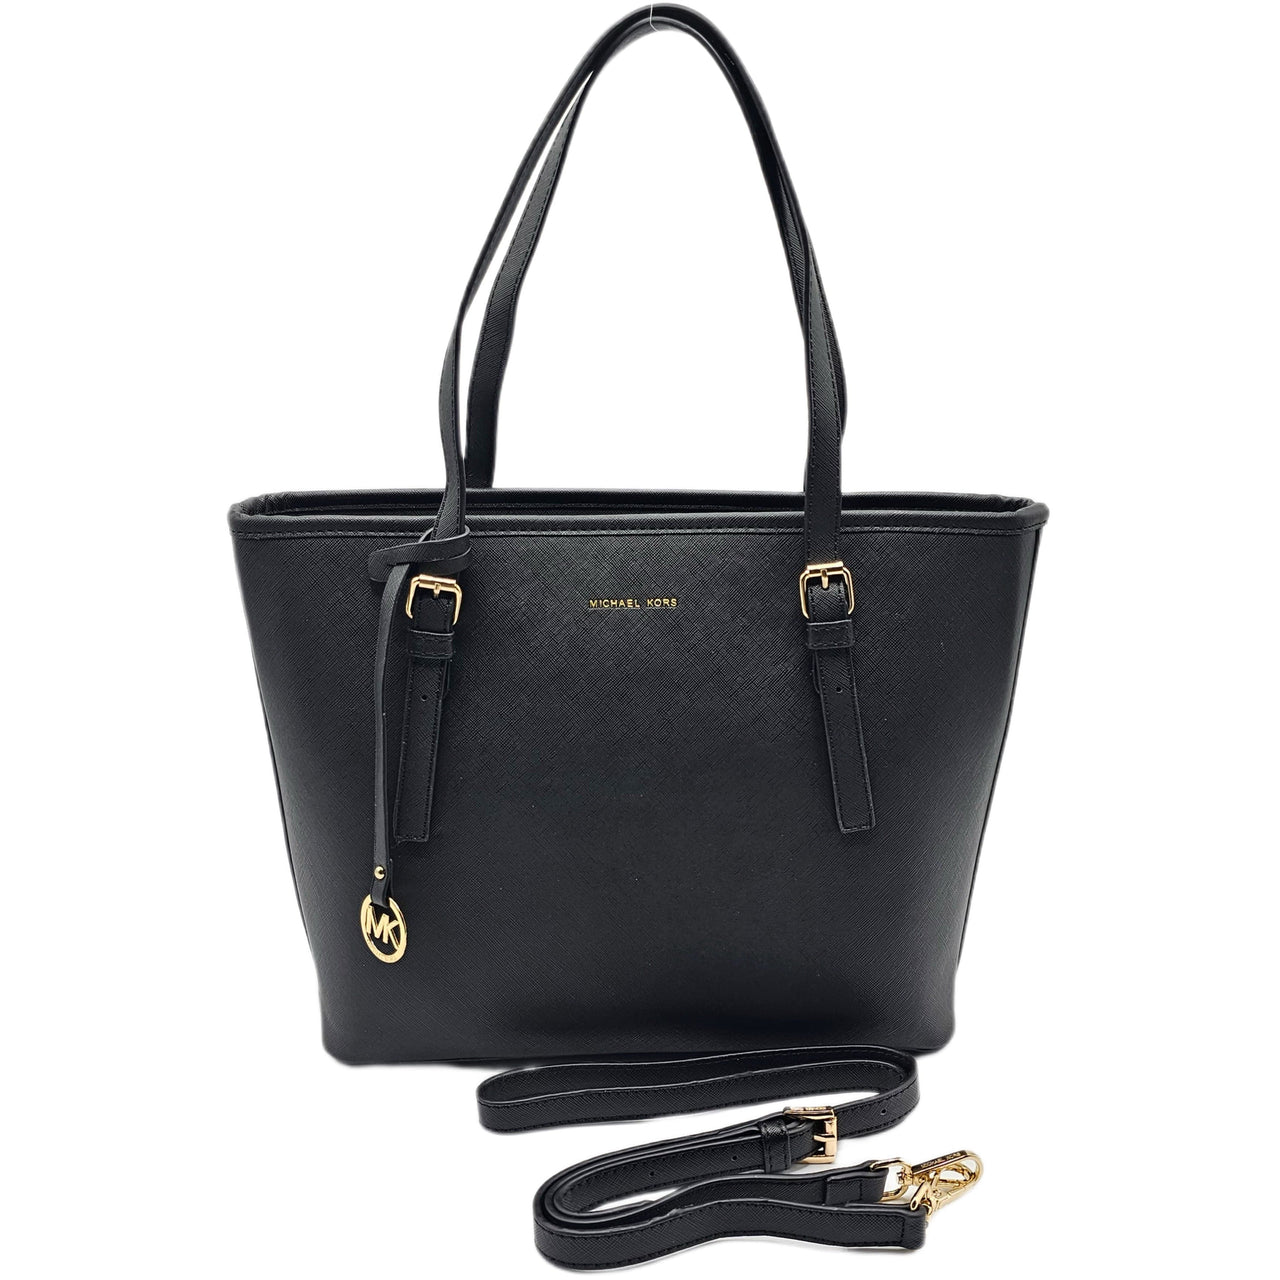 The Bag Couture Handbags, Wallets & Cases Michael Kors Jet Set Travel Carryall Tote / Shoulder Bag Black